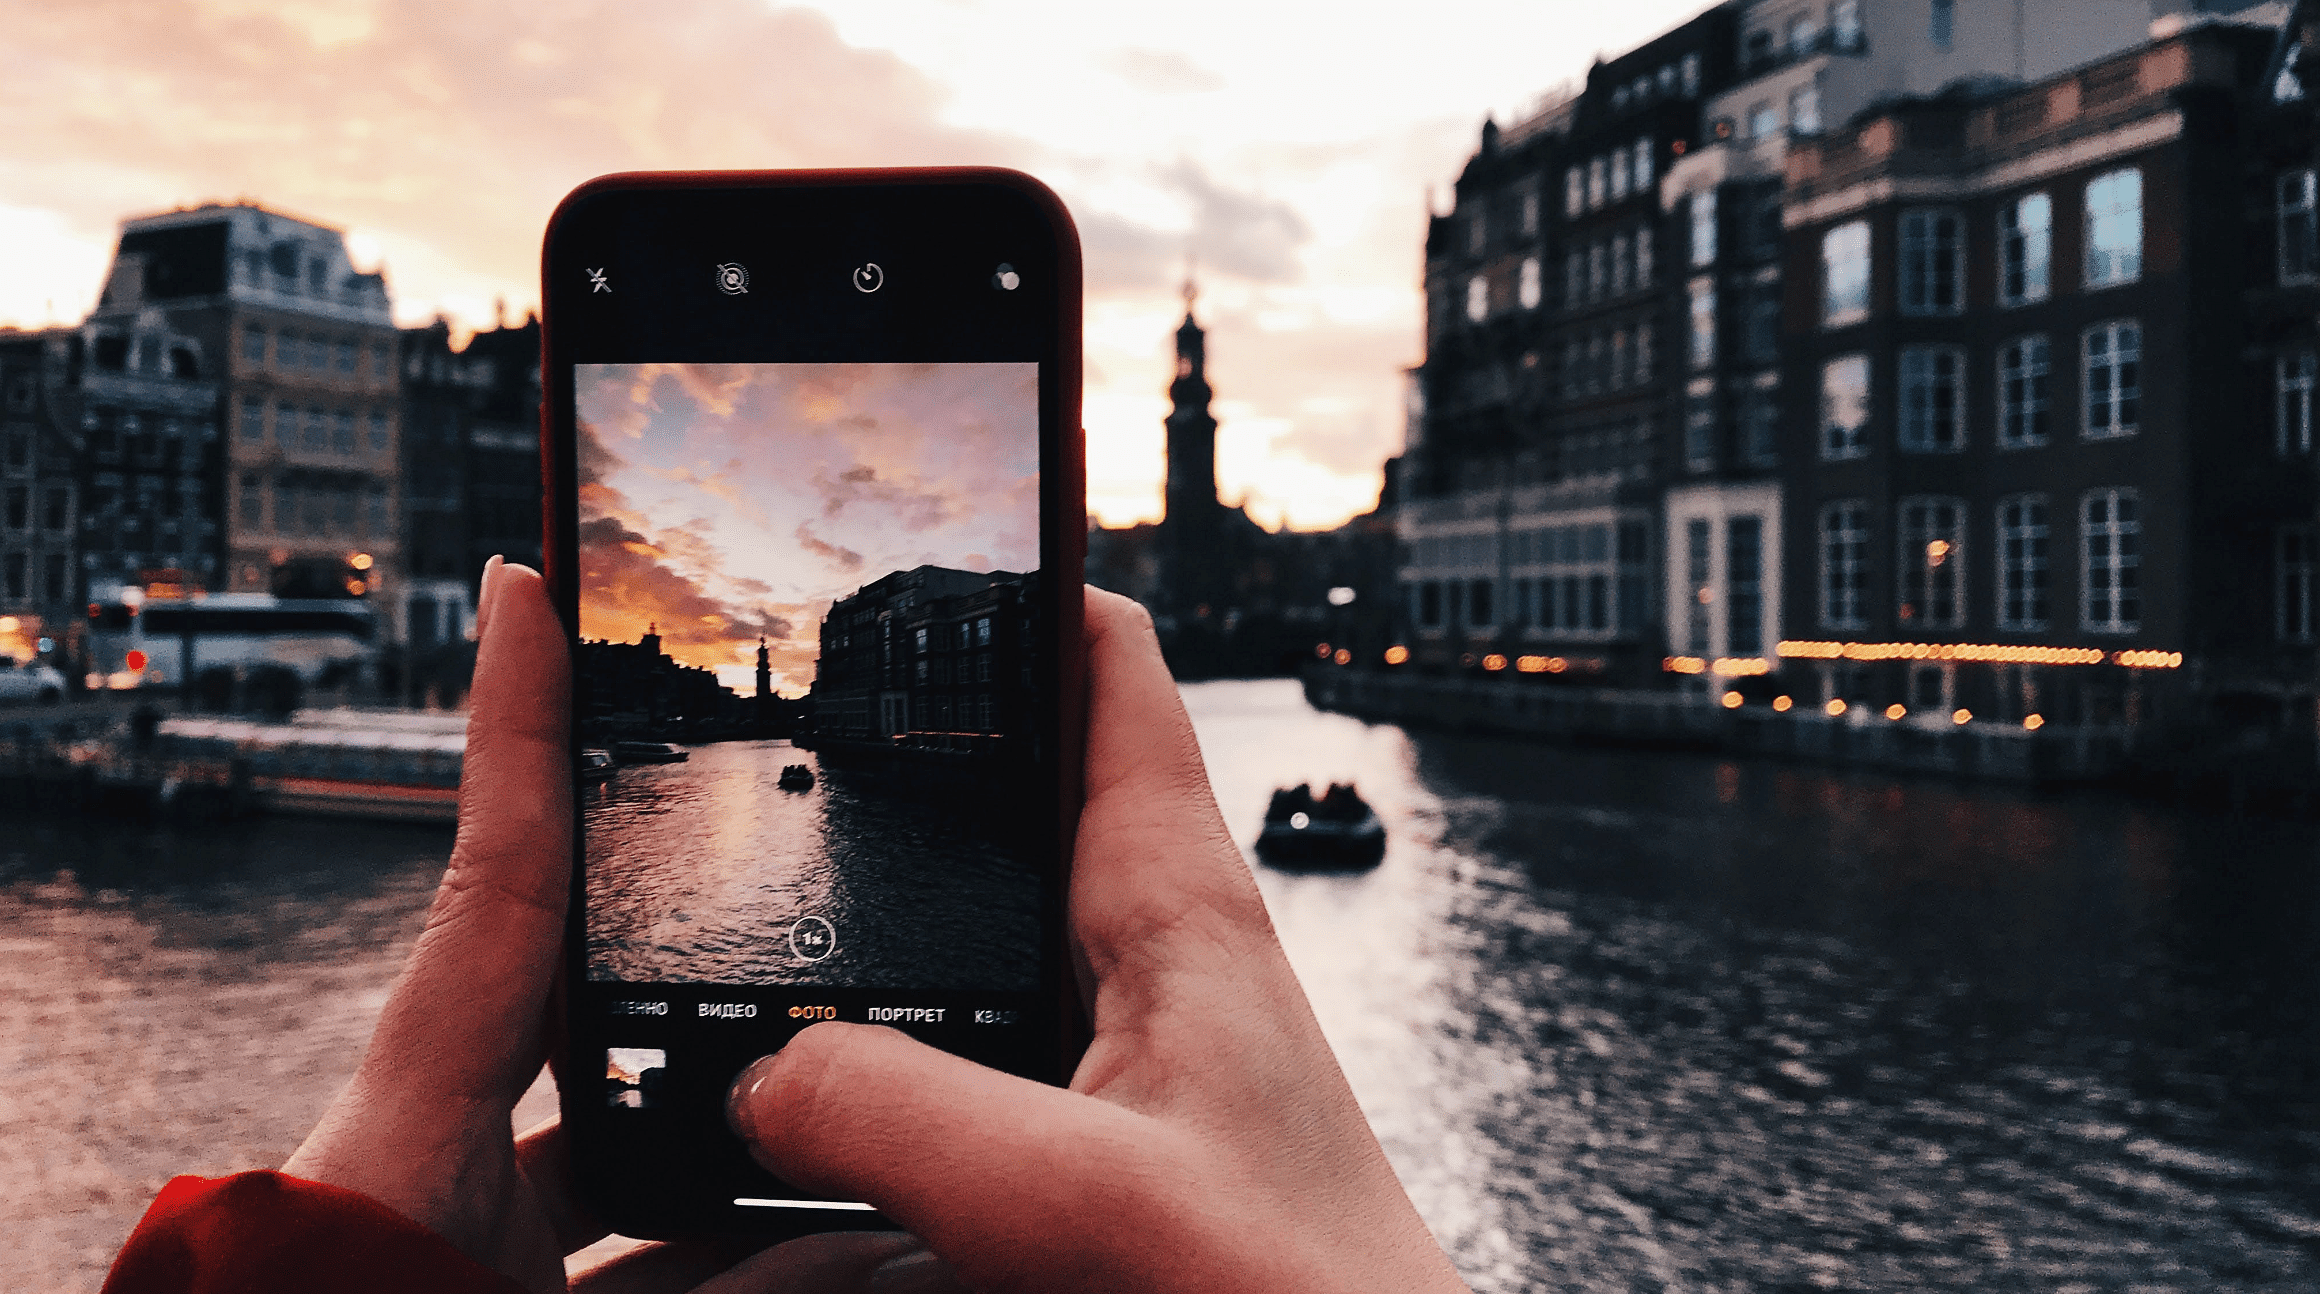 شخص يستخدم الهاتف الذكي لالتقاط صورة أثناء السفر في أوروبا